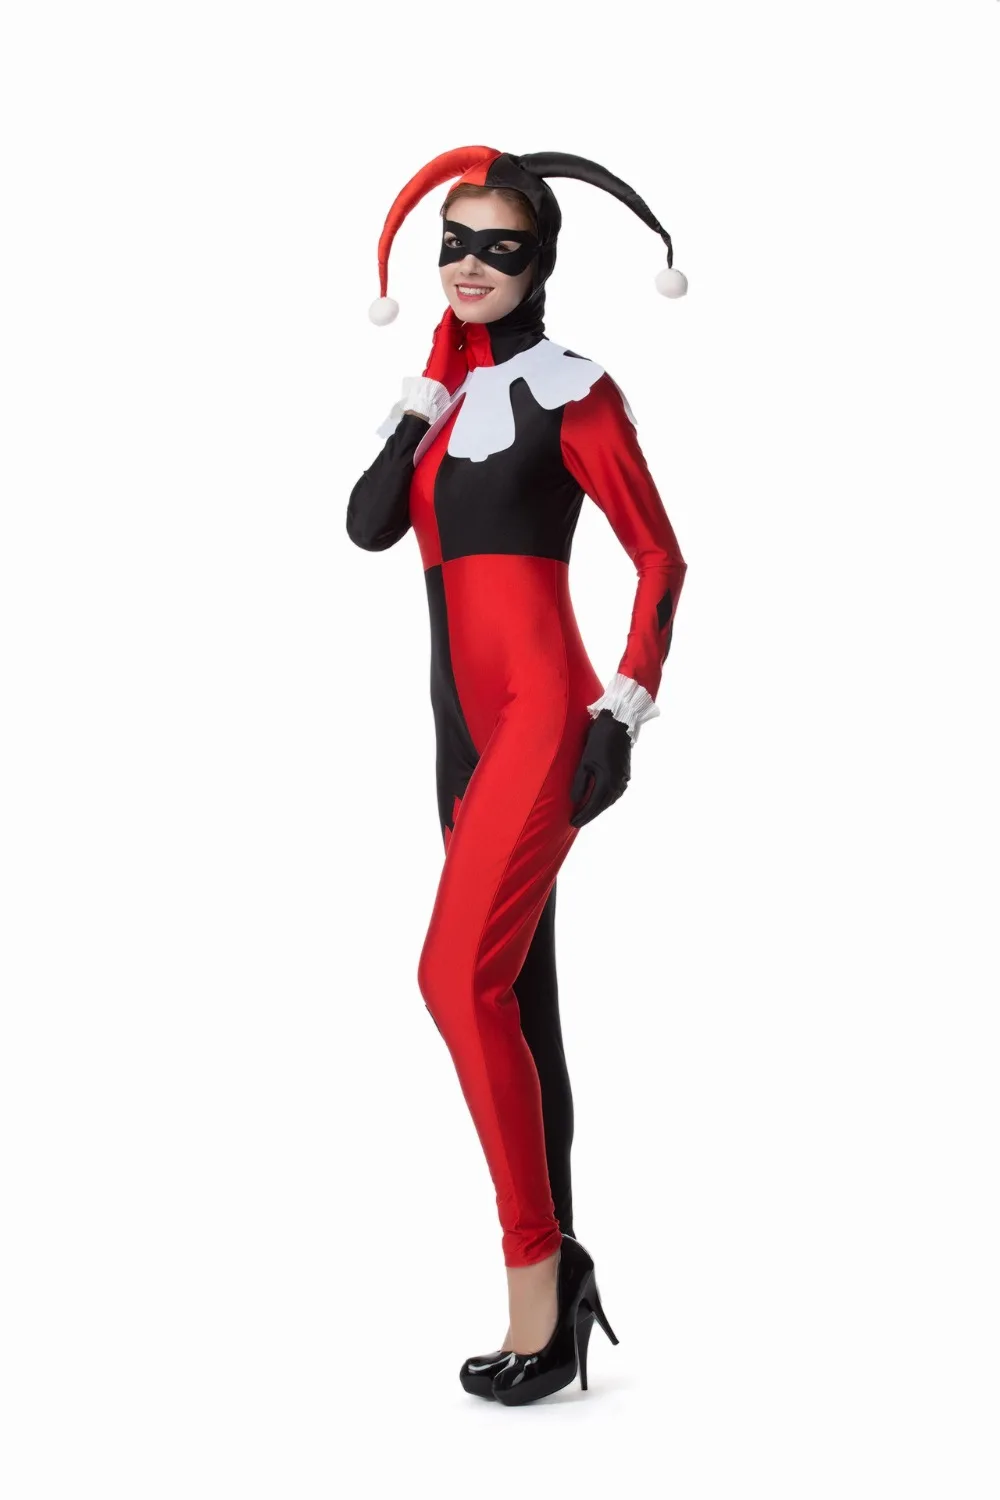 Харли Квинн костюм Женщины взрослый сексуальный супергерой клоун Косплей спандекс Полный боди карнавальный костюм установлены Арлекин Косплей M XL